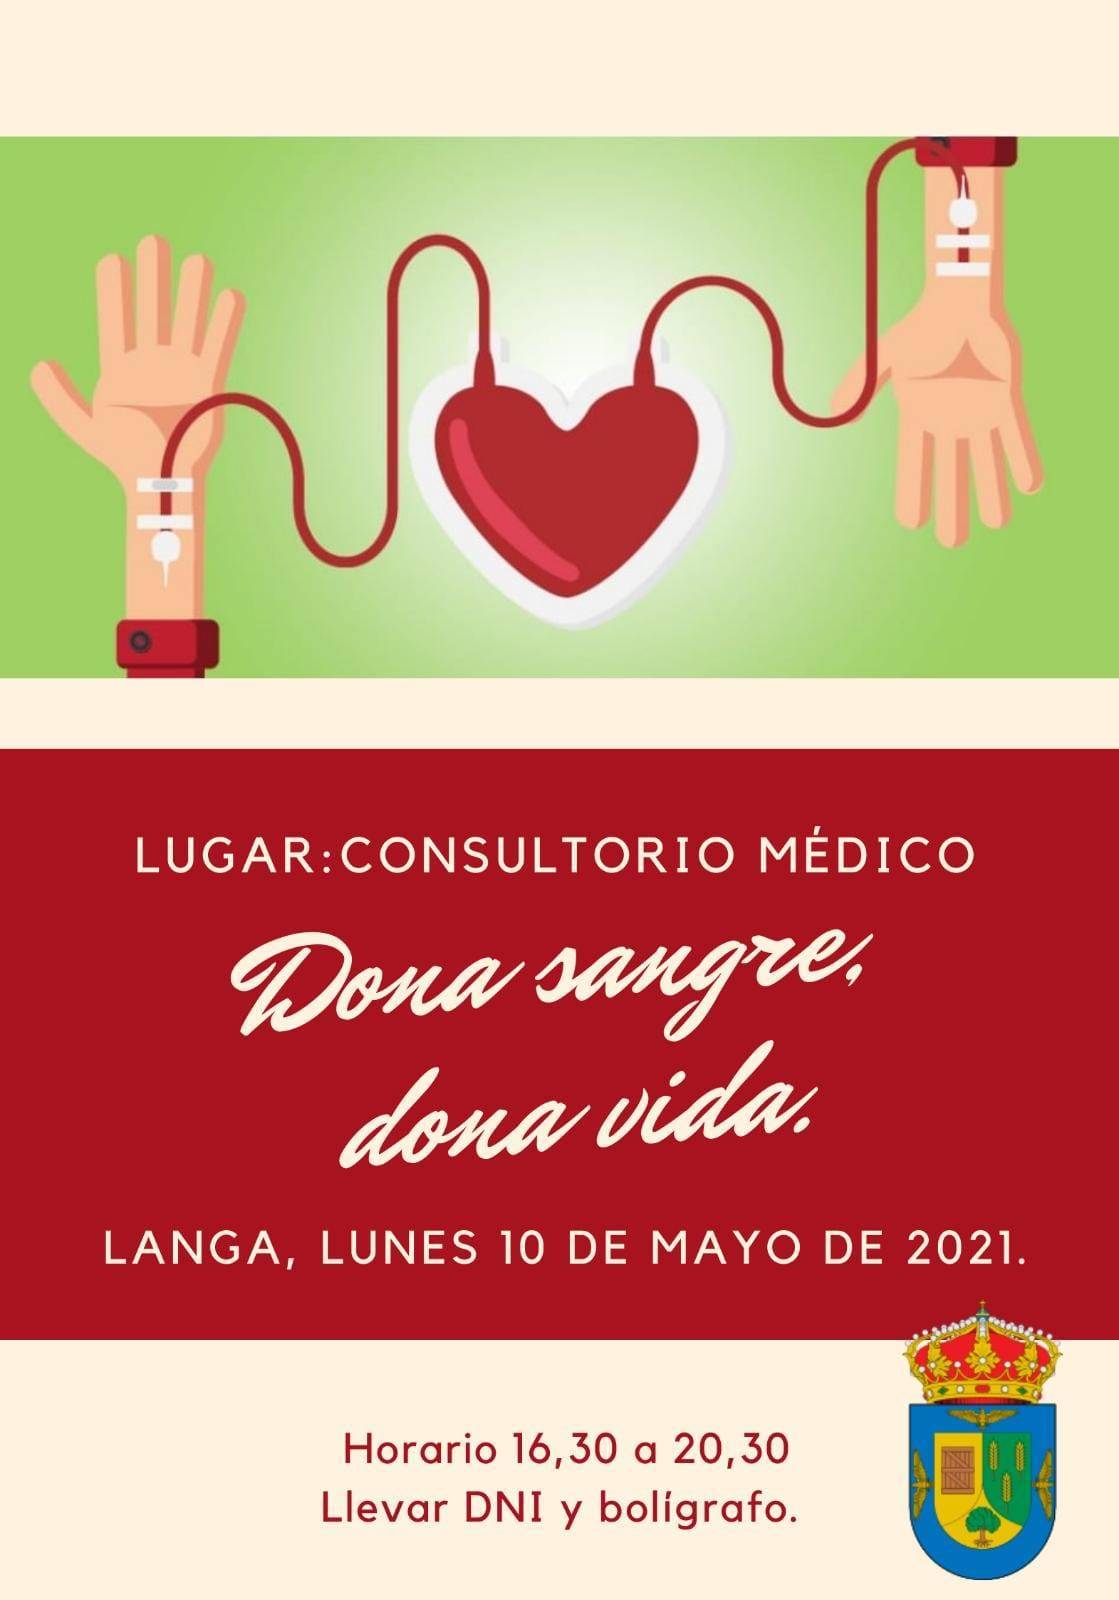 Donación de sangre (mayo 2021) - Langa (Ávila)